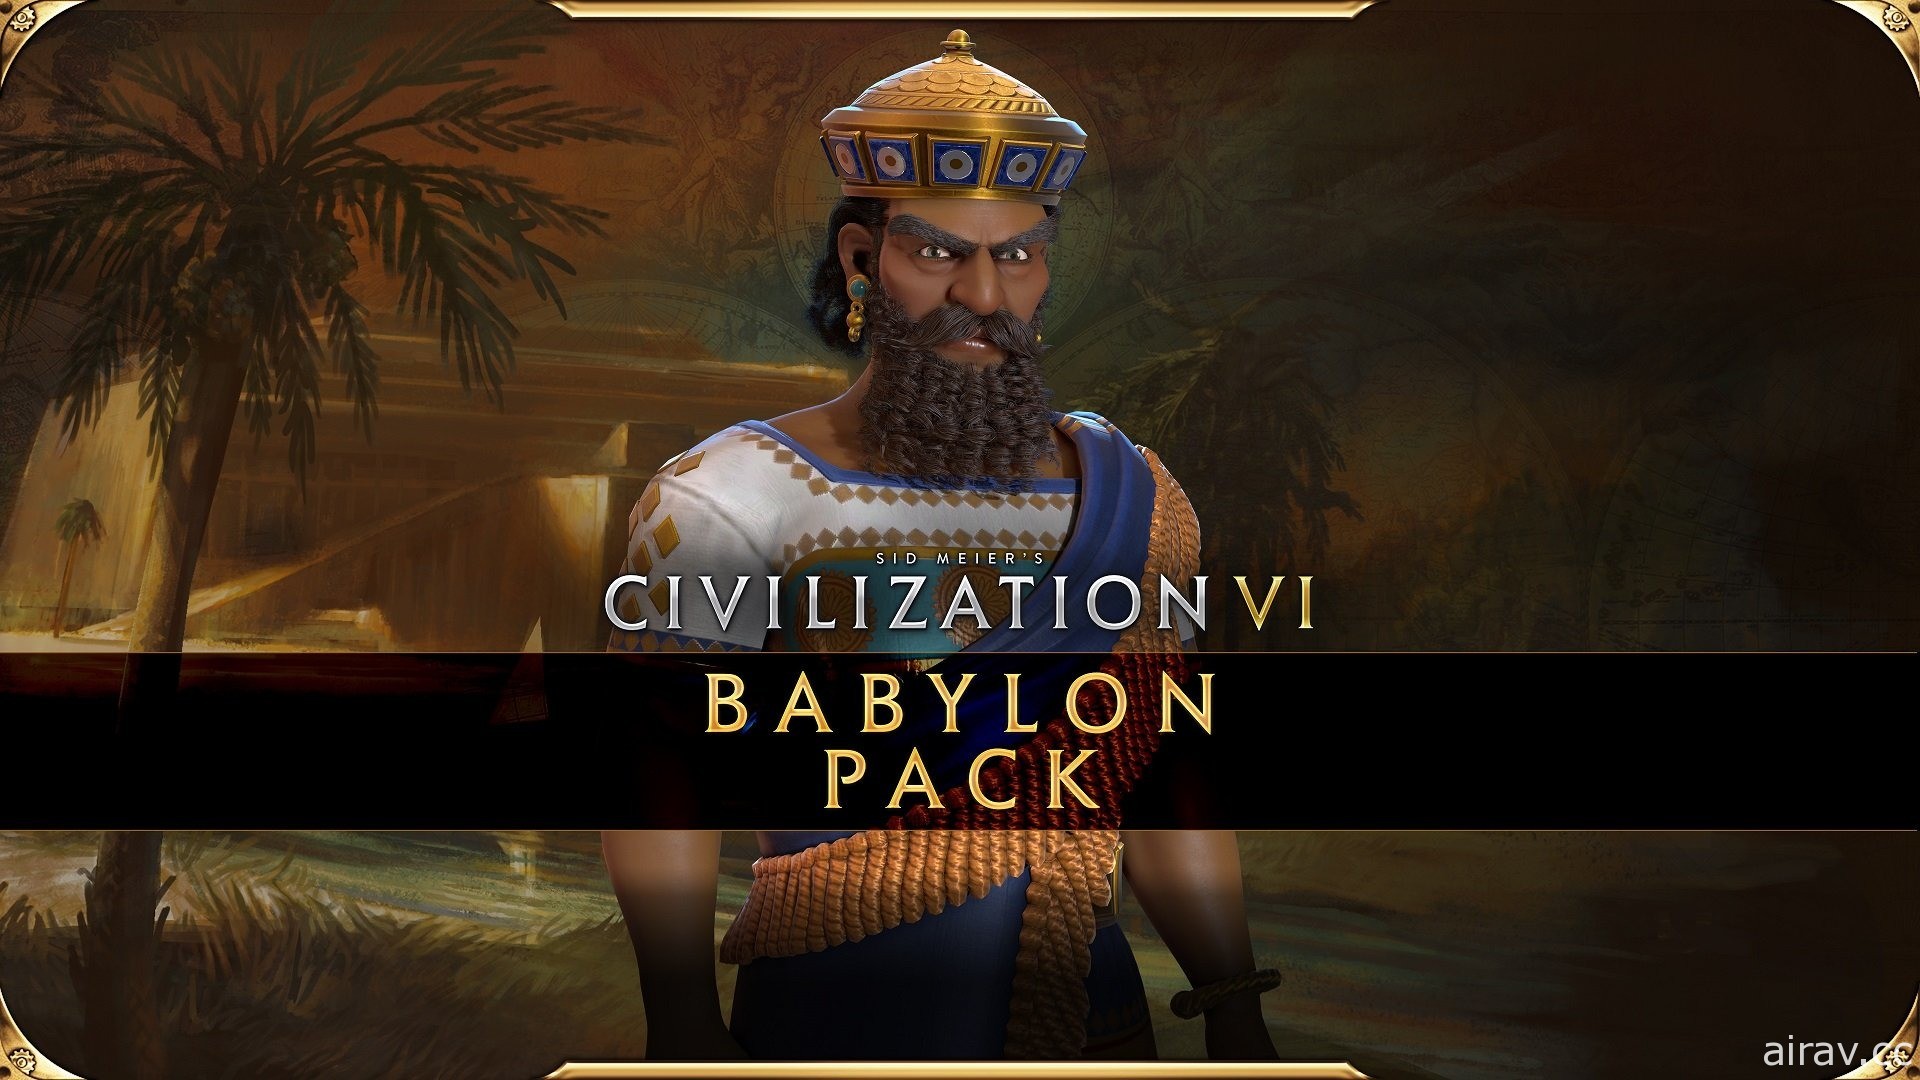 《文明帝國 6》新邊疆季票巴比倫包已推出 新模式「英雄與傳奇」讓世界偉人變可玩角色